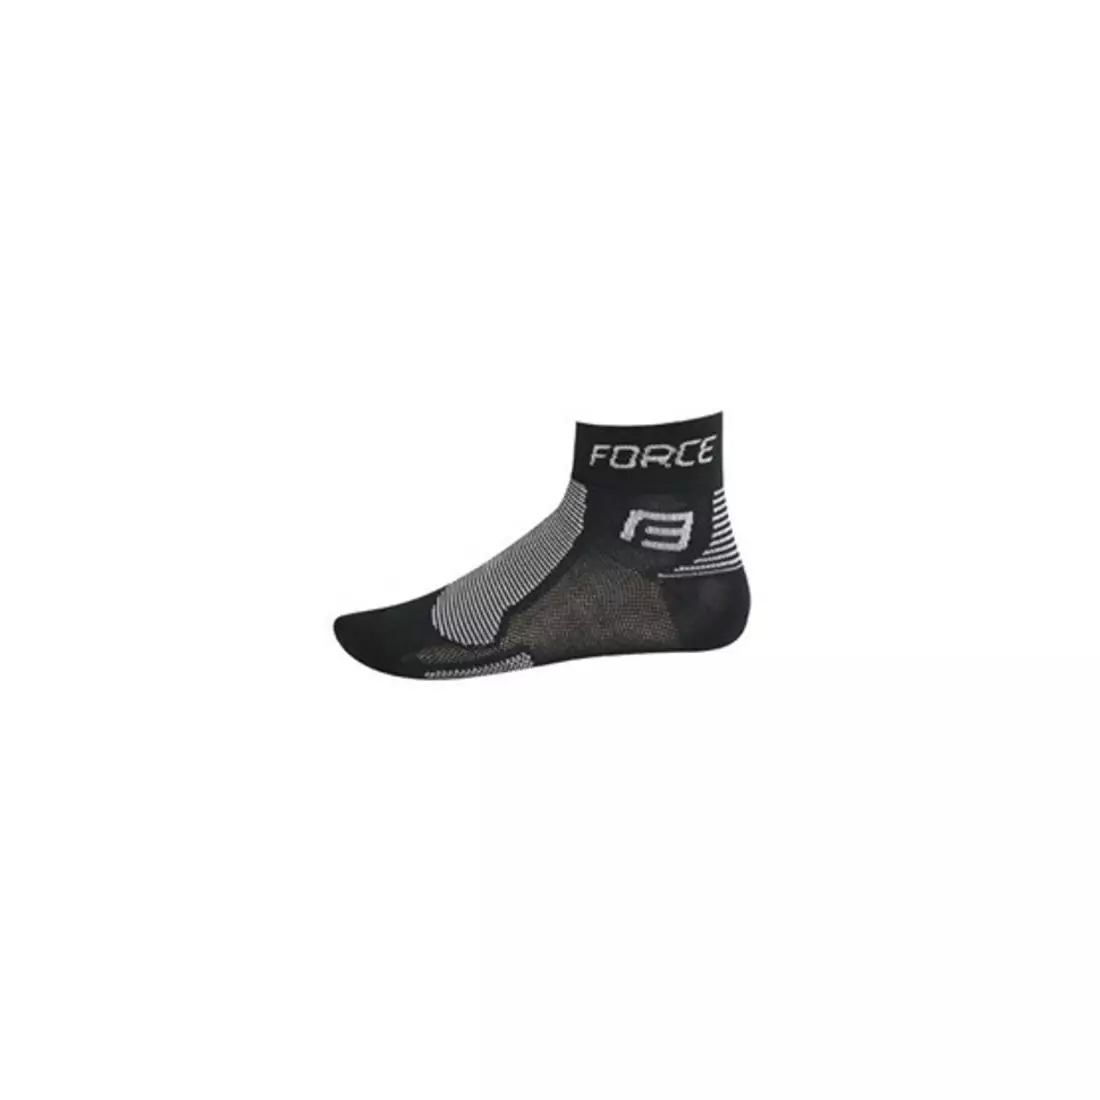 FORCE Socken 9010, Farbe: schwarz